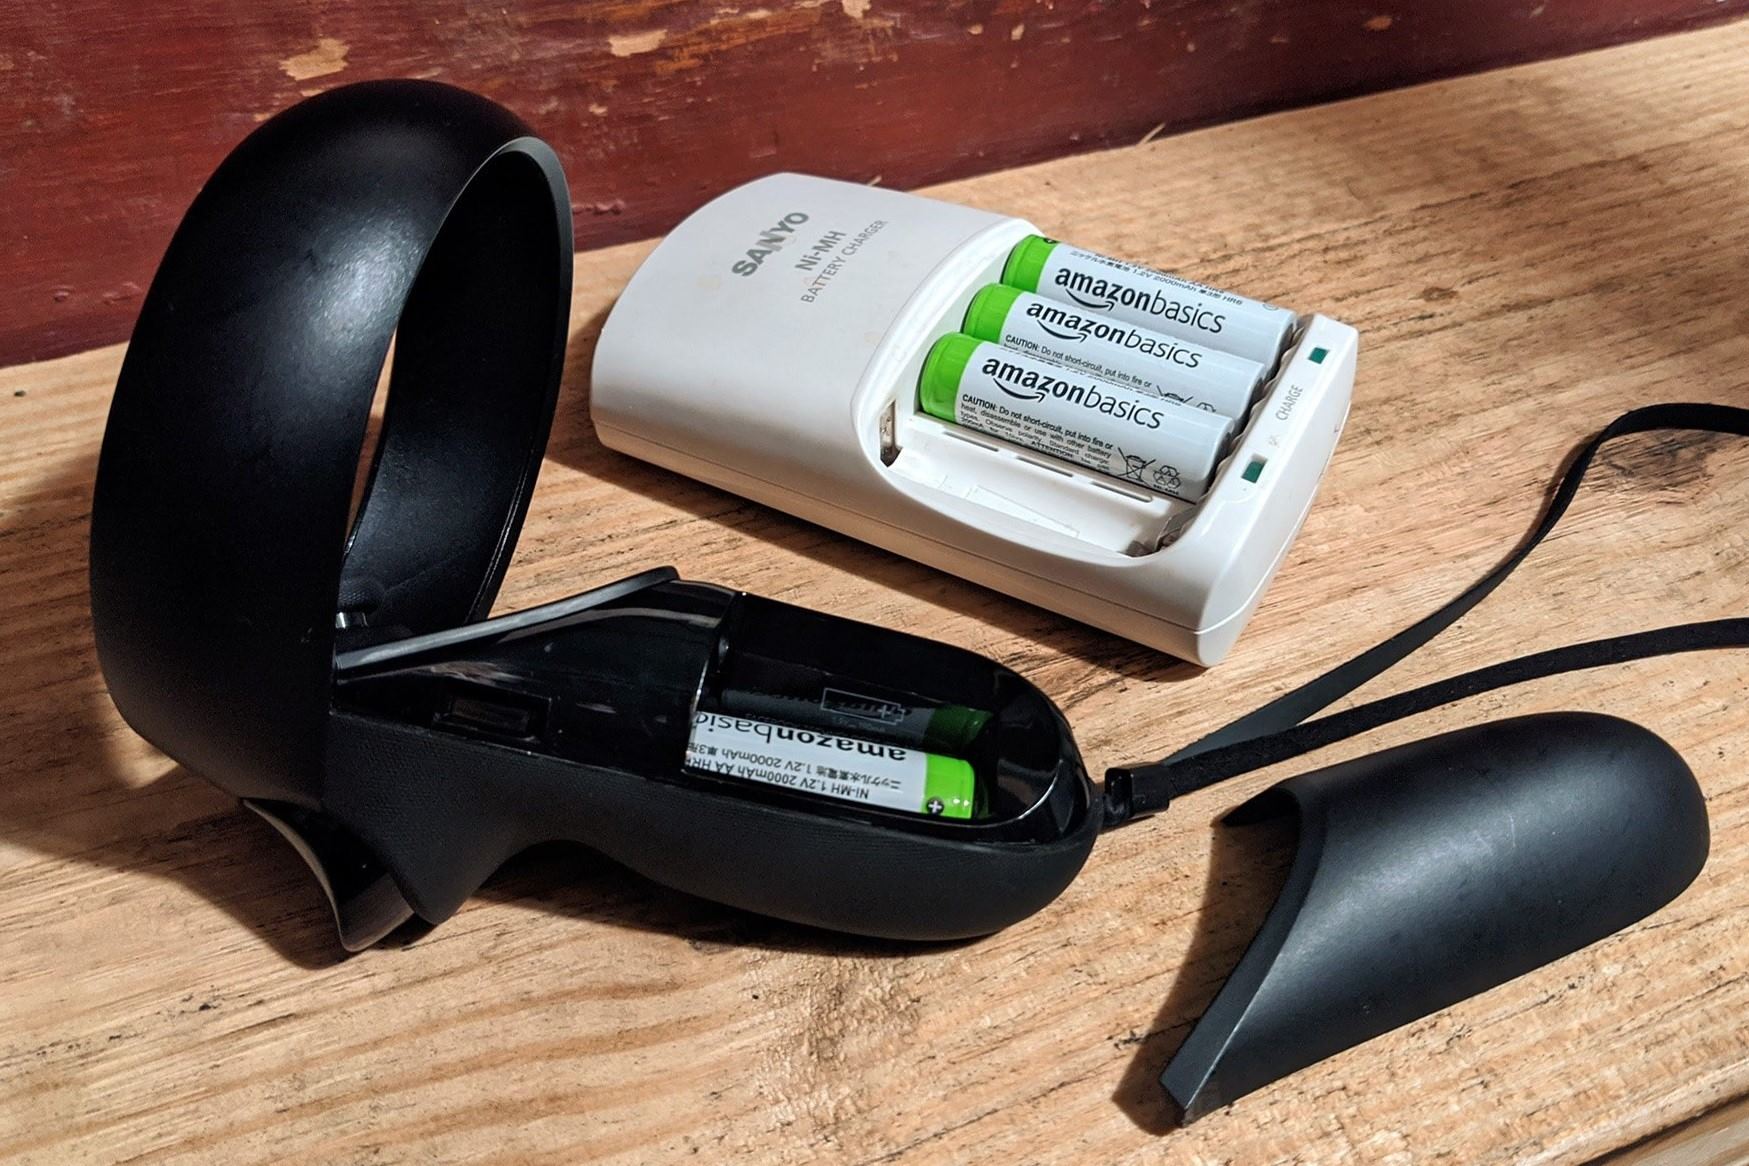 Oculus Rift: Where Do You Put Batteries